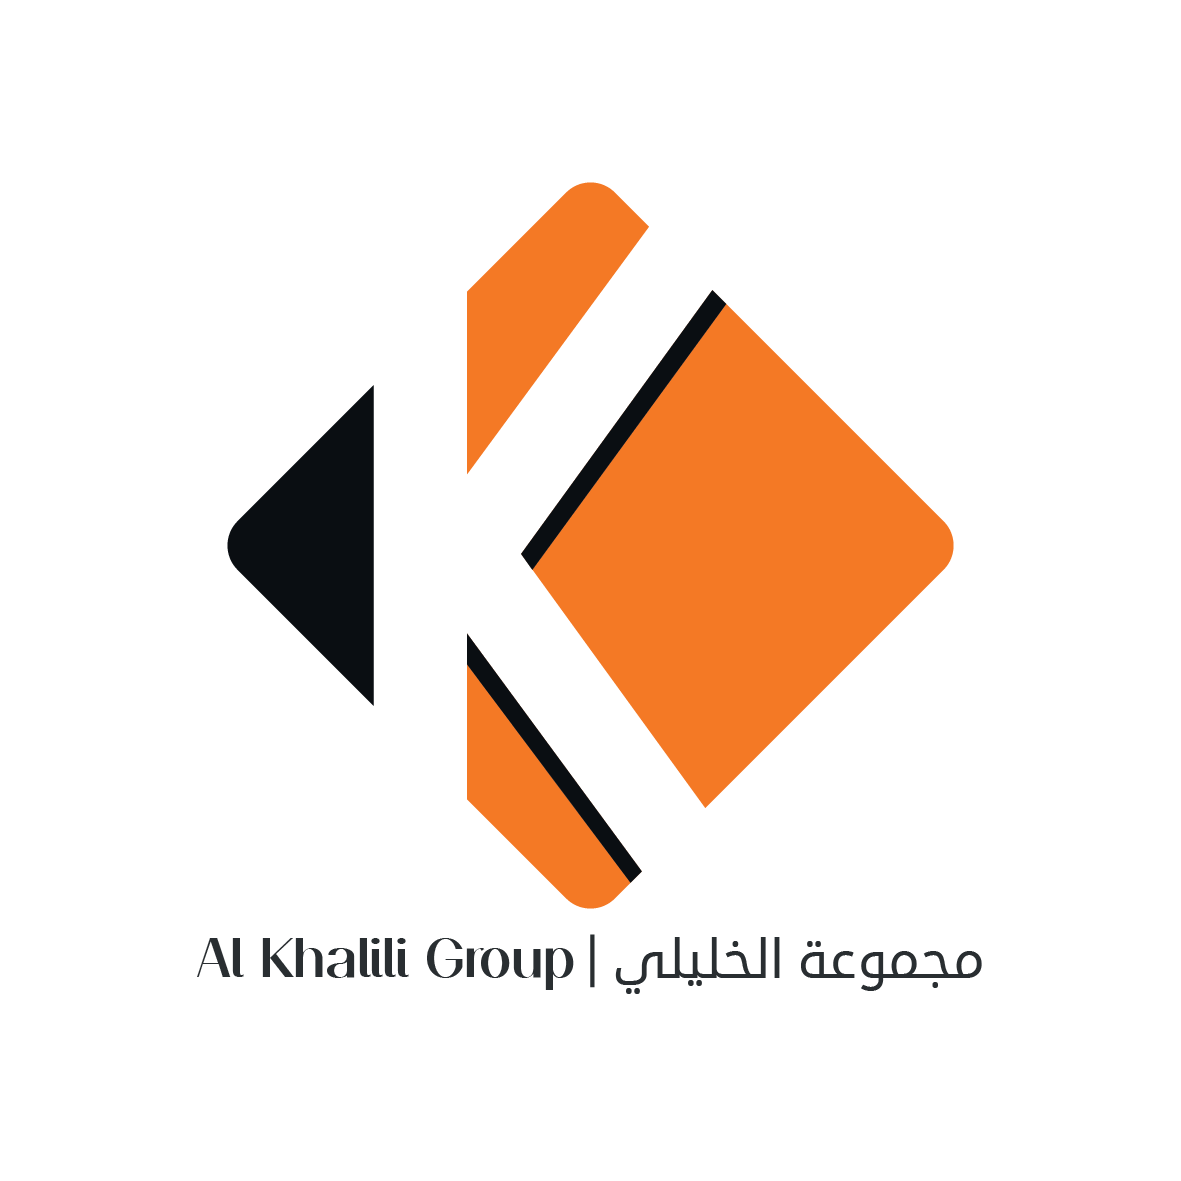 Alkhalili Group